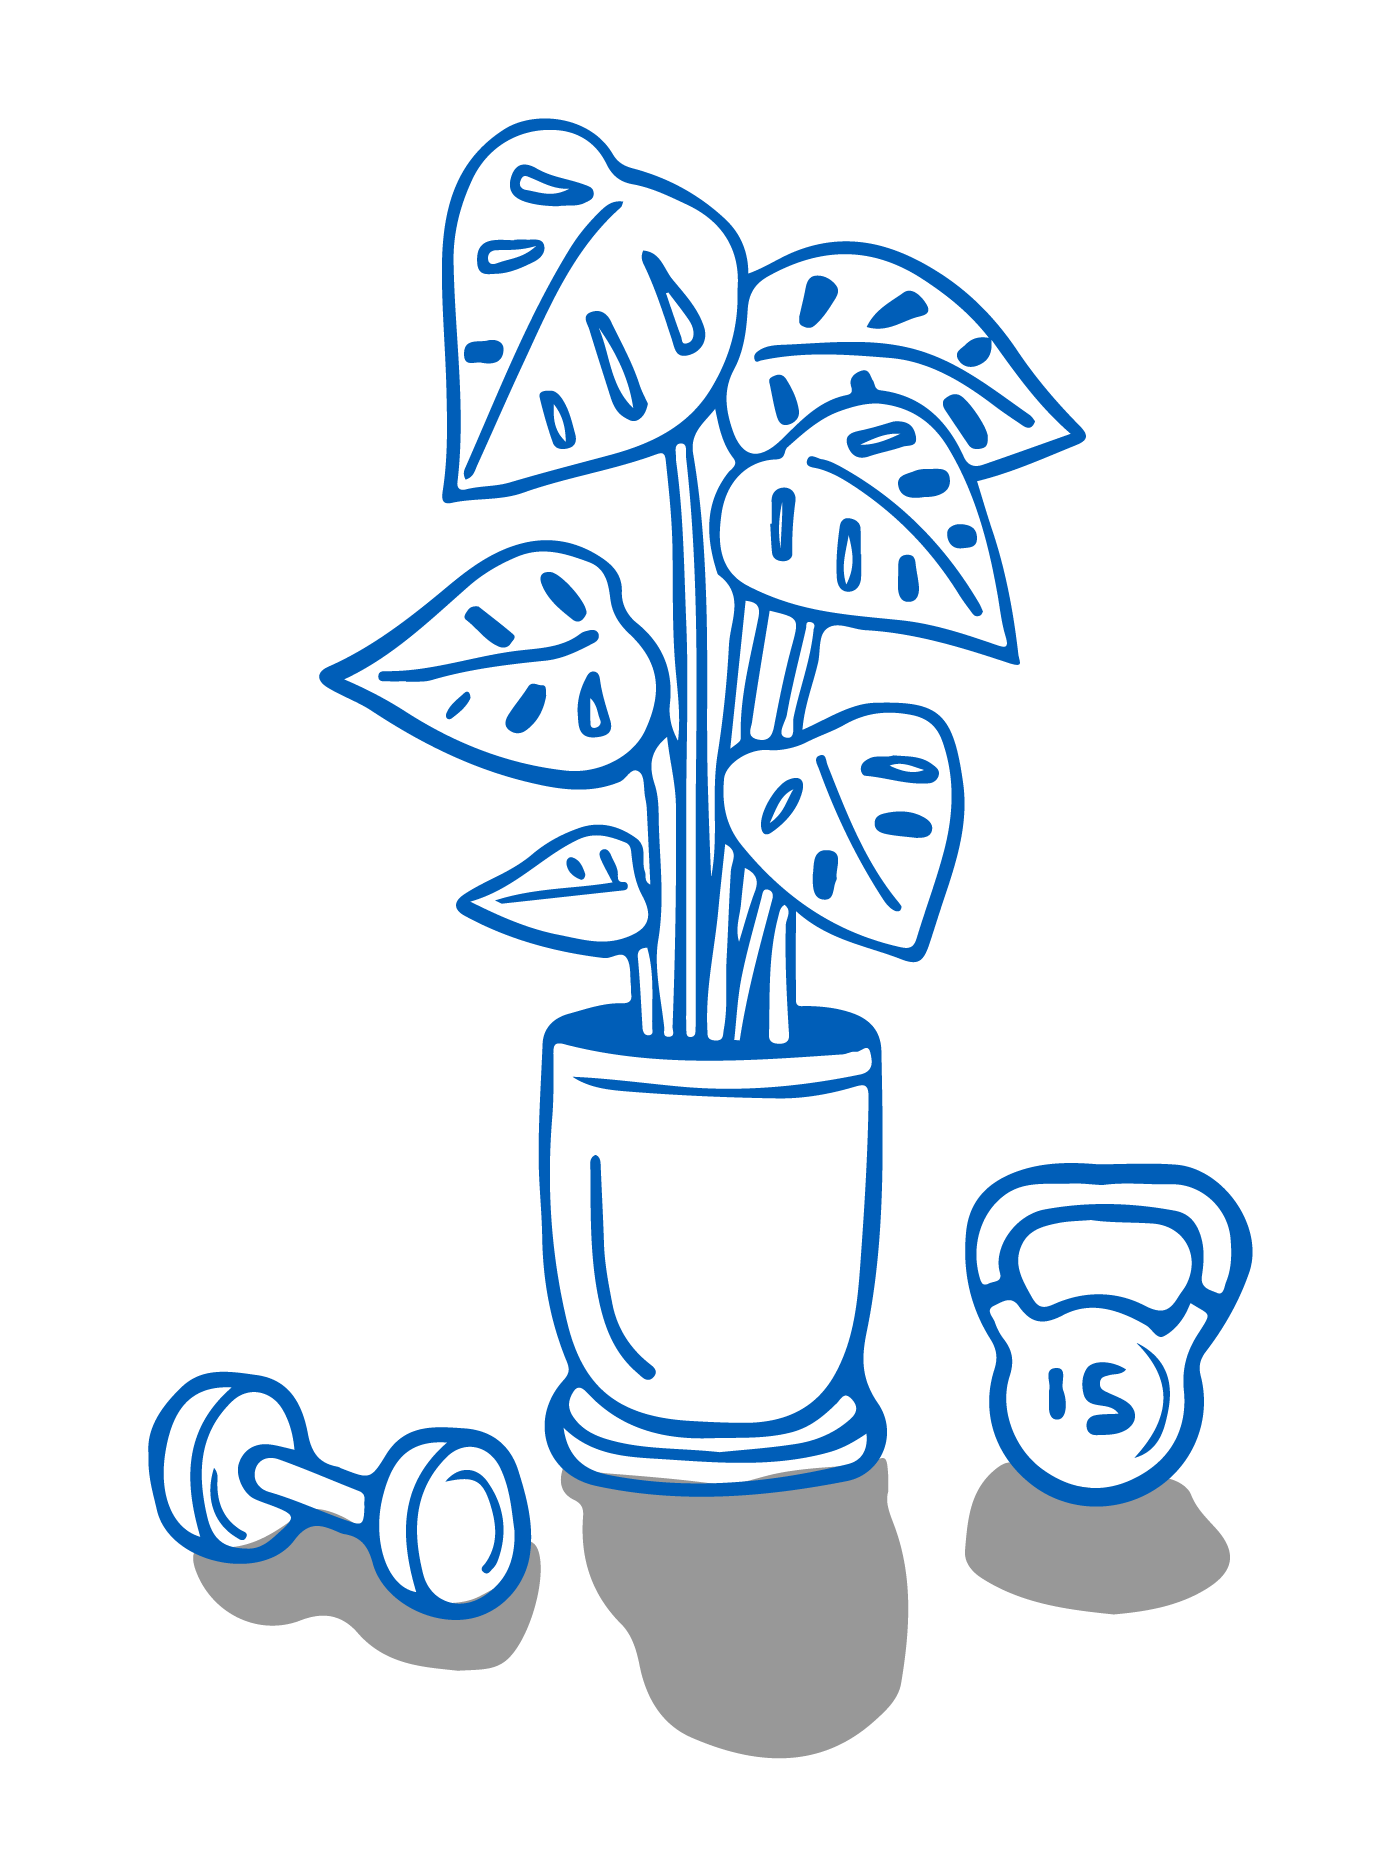 Eine Zimmerpflanze steht auf dem Boden zwischen einer Hantel und einer Kugelhantel.